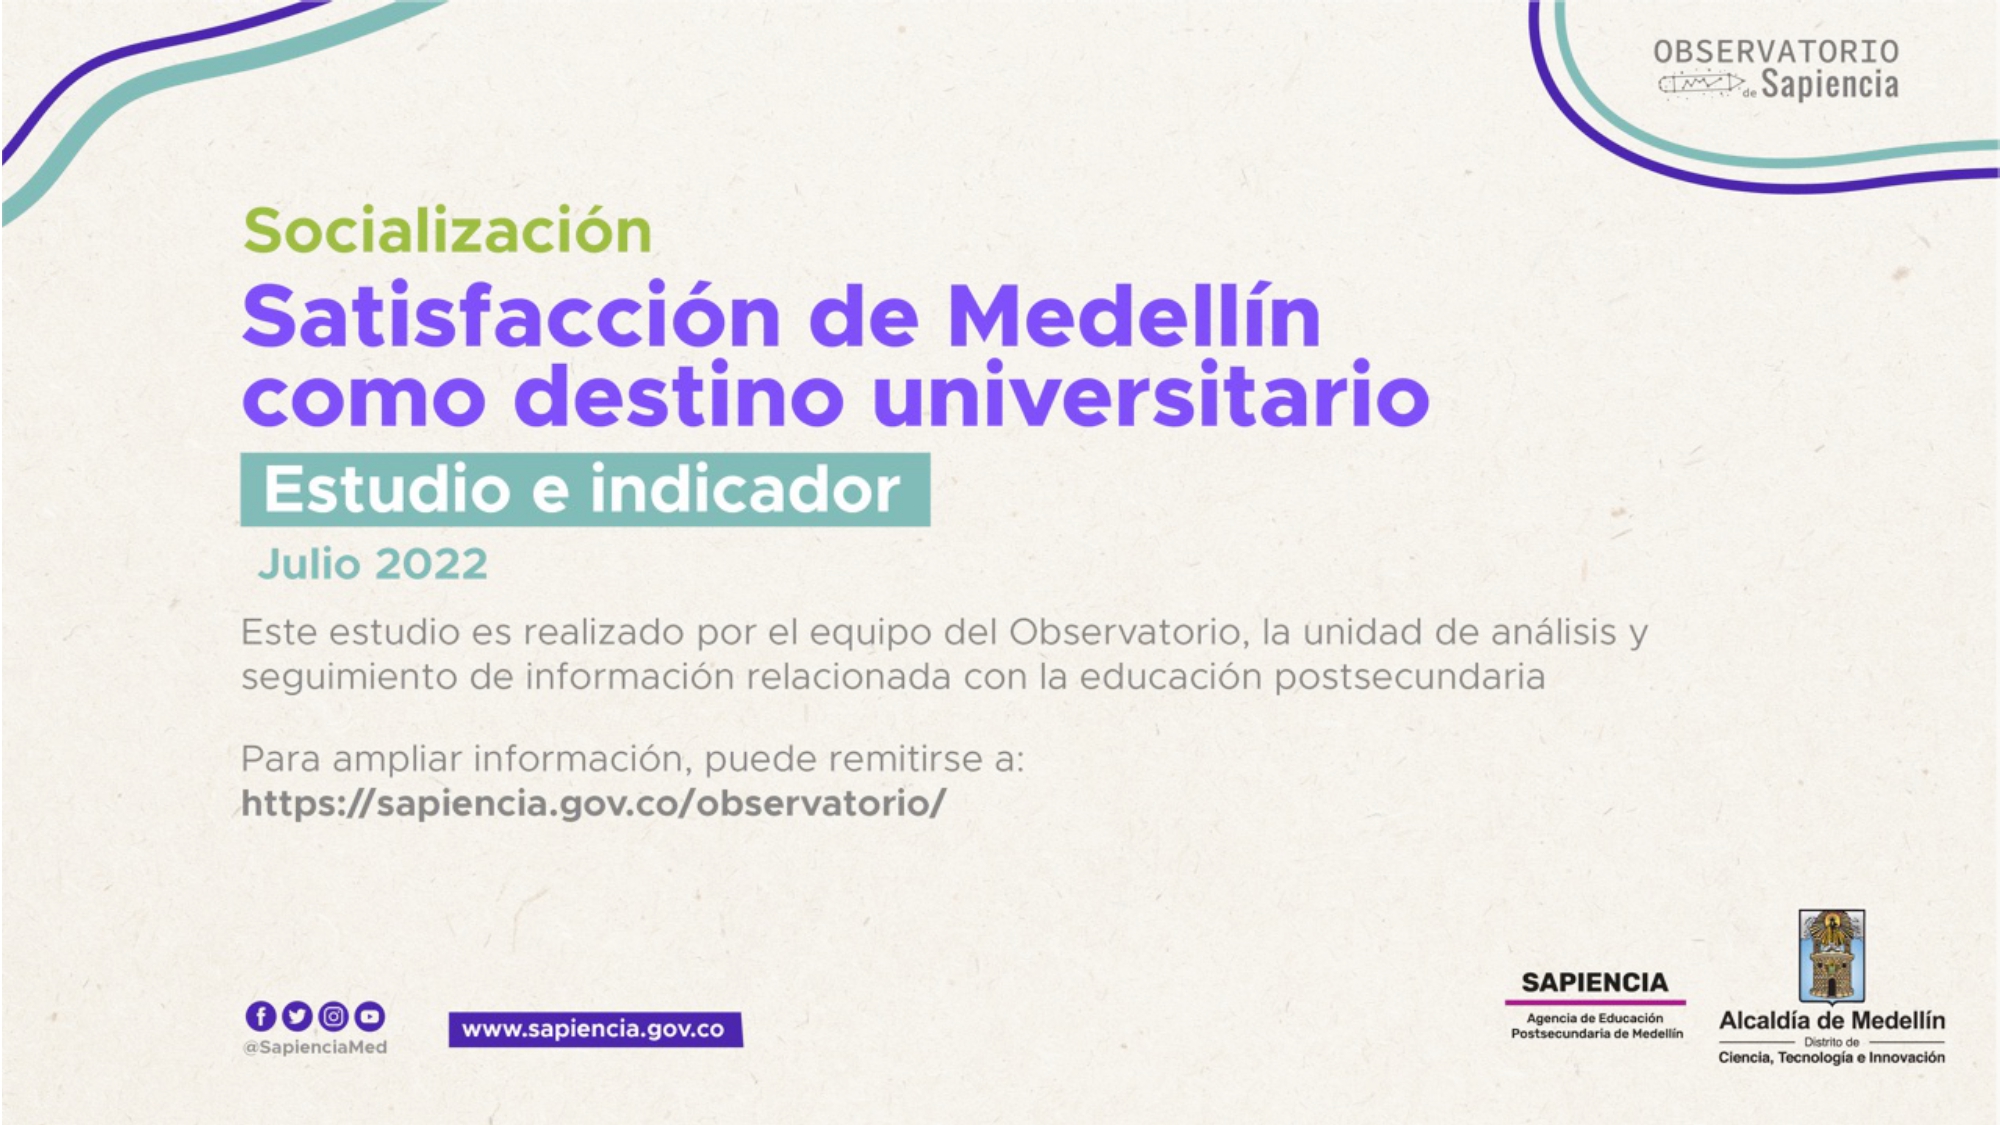 Estudio de Satisfacción de Medellín como destino universitario 2022 del Observatorio de Sapiencia